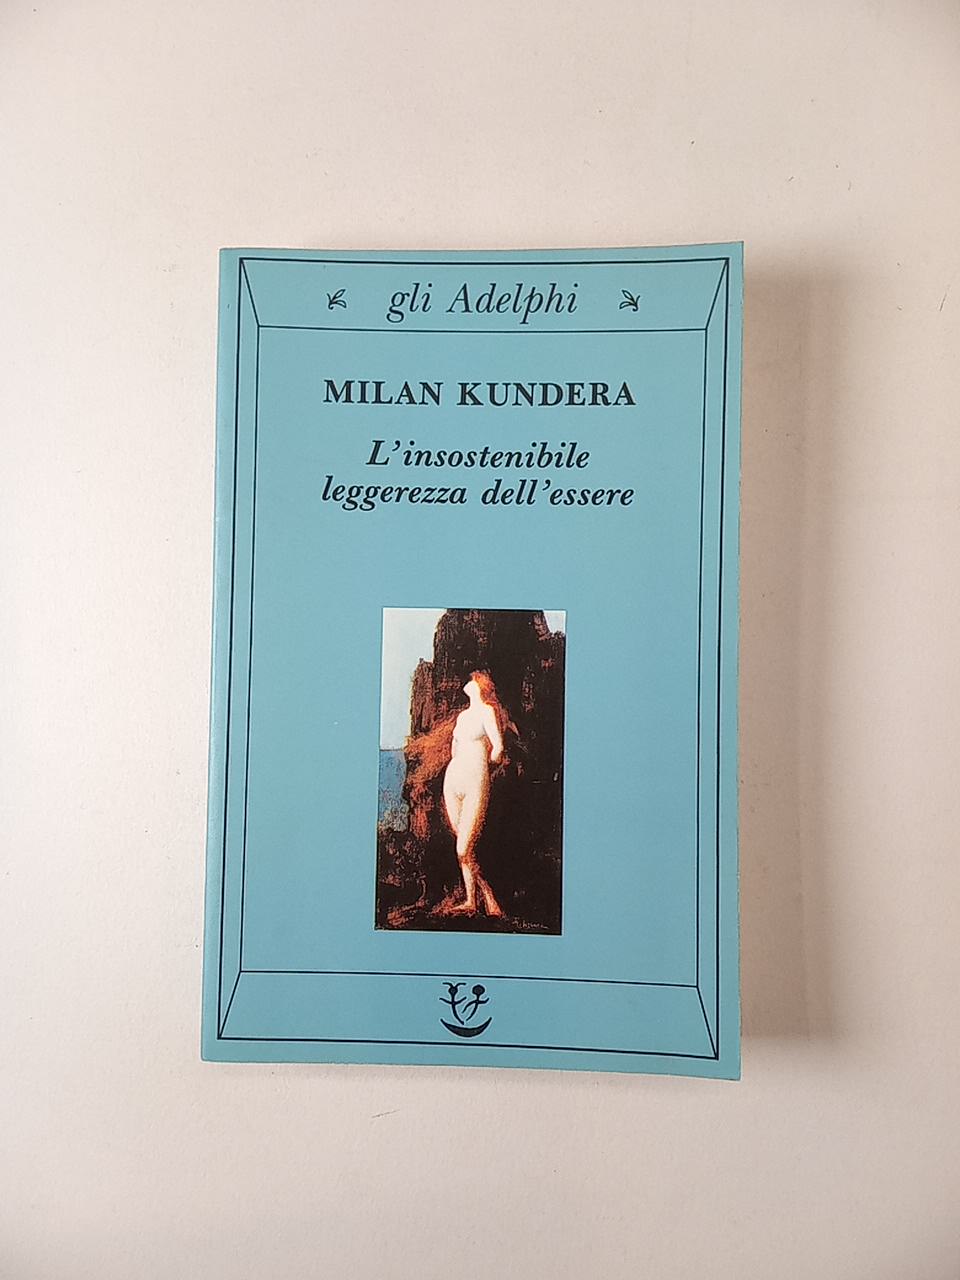 Milan Kundera - L'insostenibile leggerezza dell'essere - Adelphi 2000 -  Semi d'inchiostro